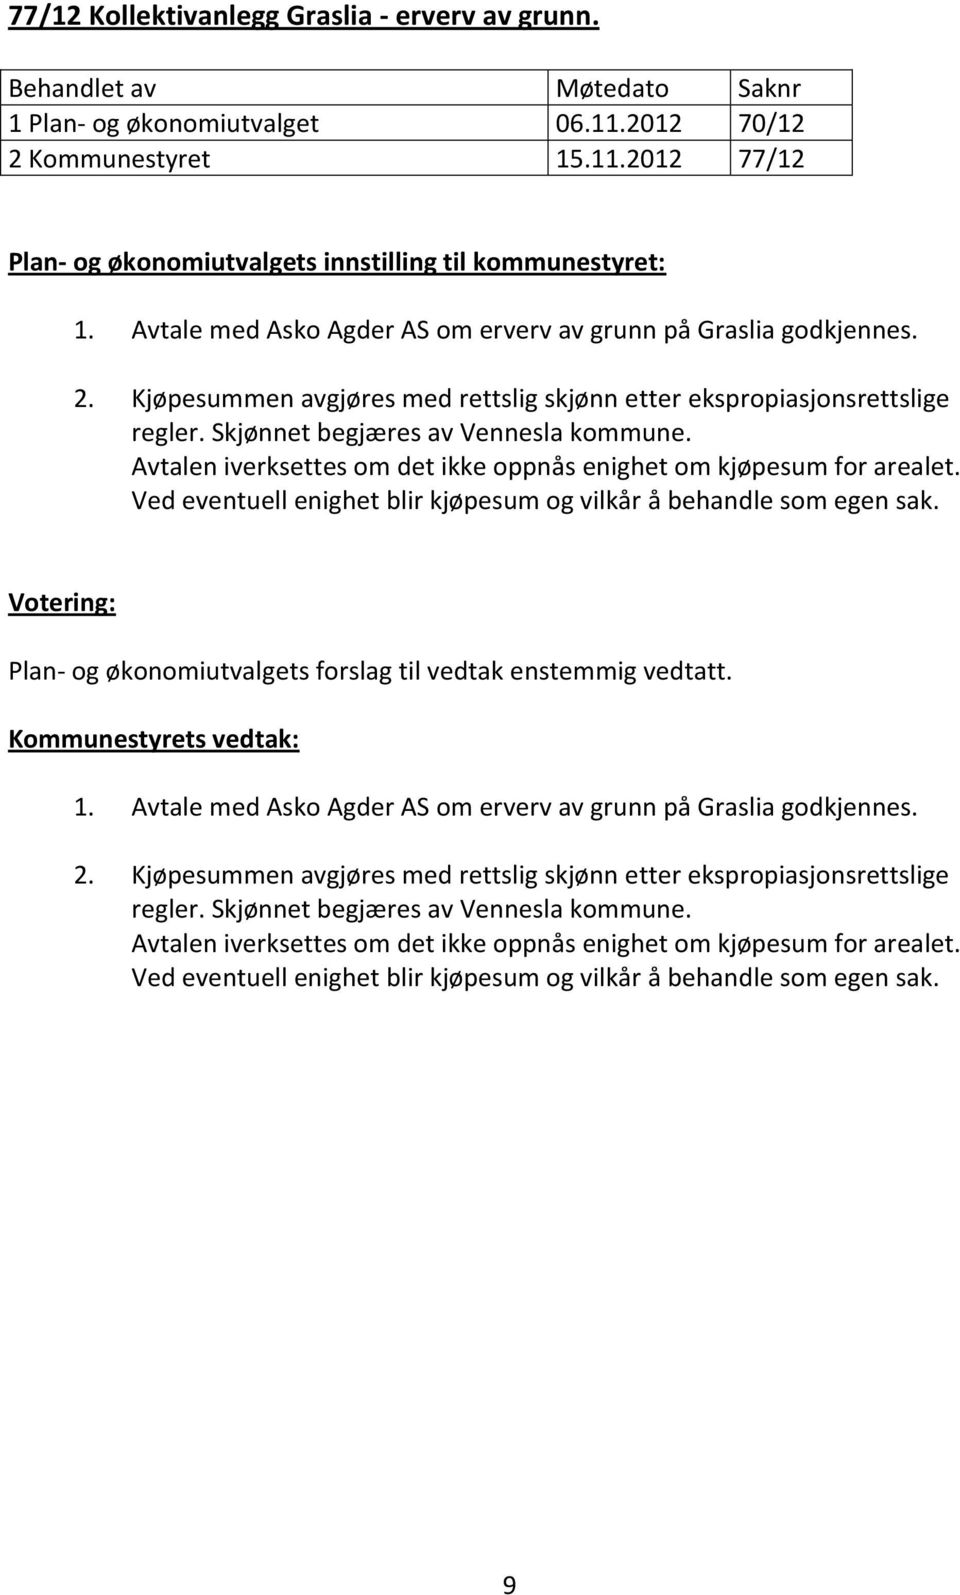 Plan- og økonomiutvalgets forslag til vedtak enstemmig vedtatt. 1. Avtale med Asko Agder AS om erverv av grunn på Graslia godkjennes. 2.